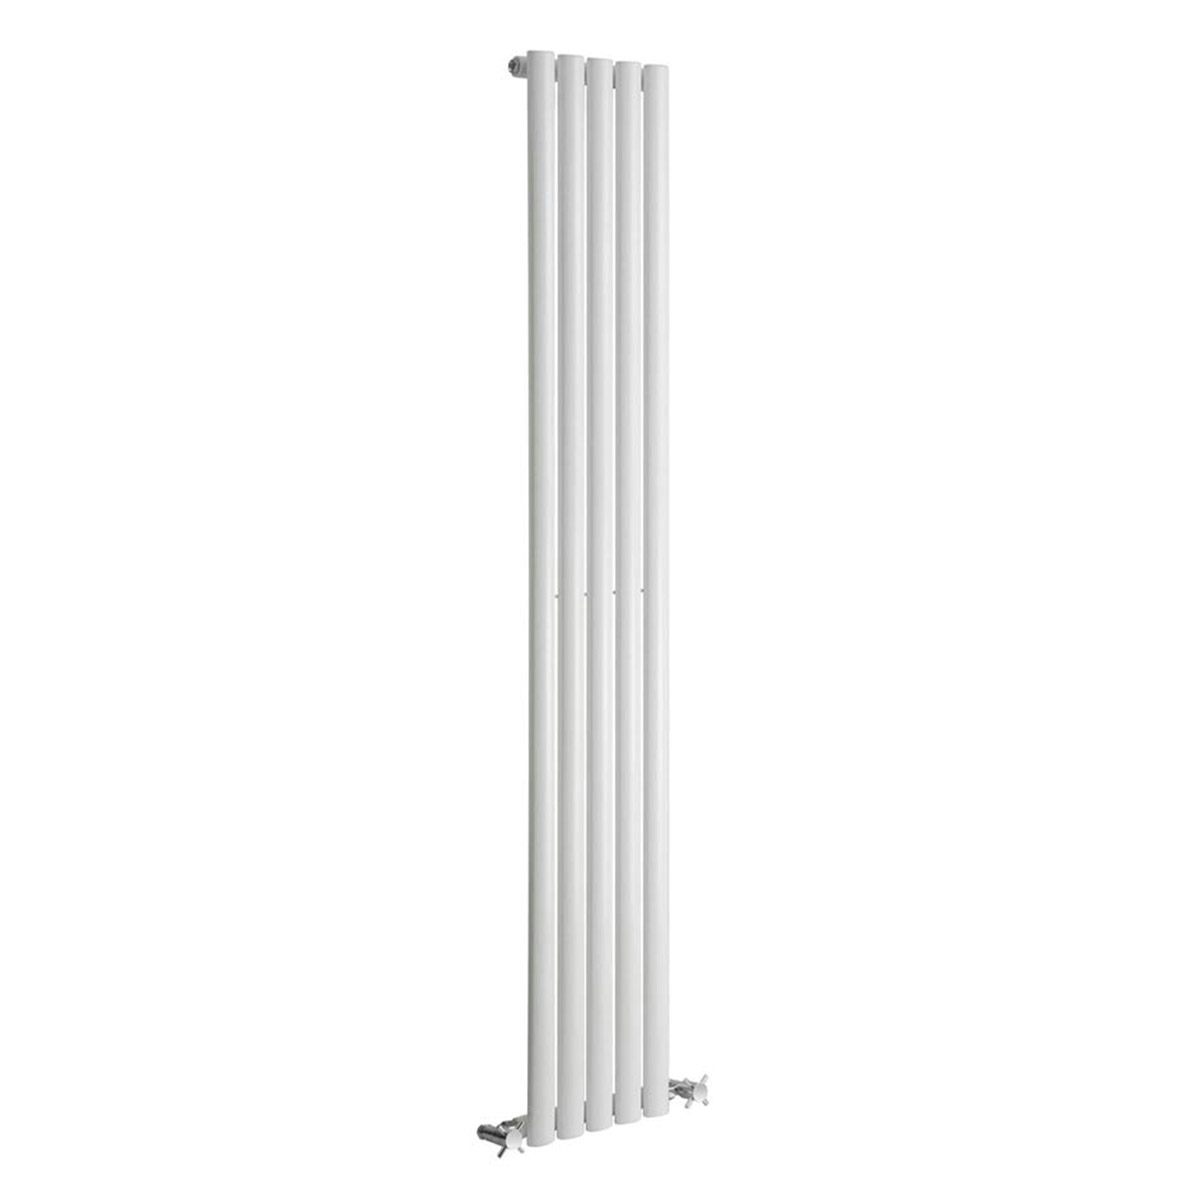 Reina Neva white single vertical steel designer radiator 1500 x 295